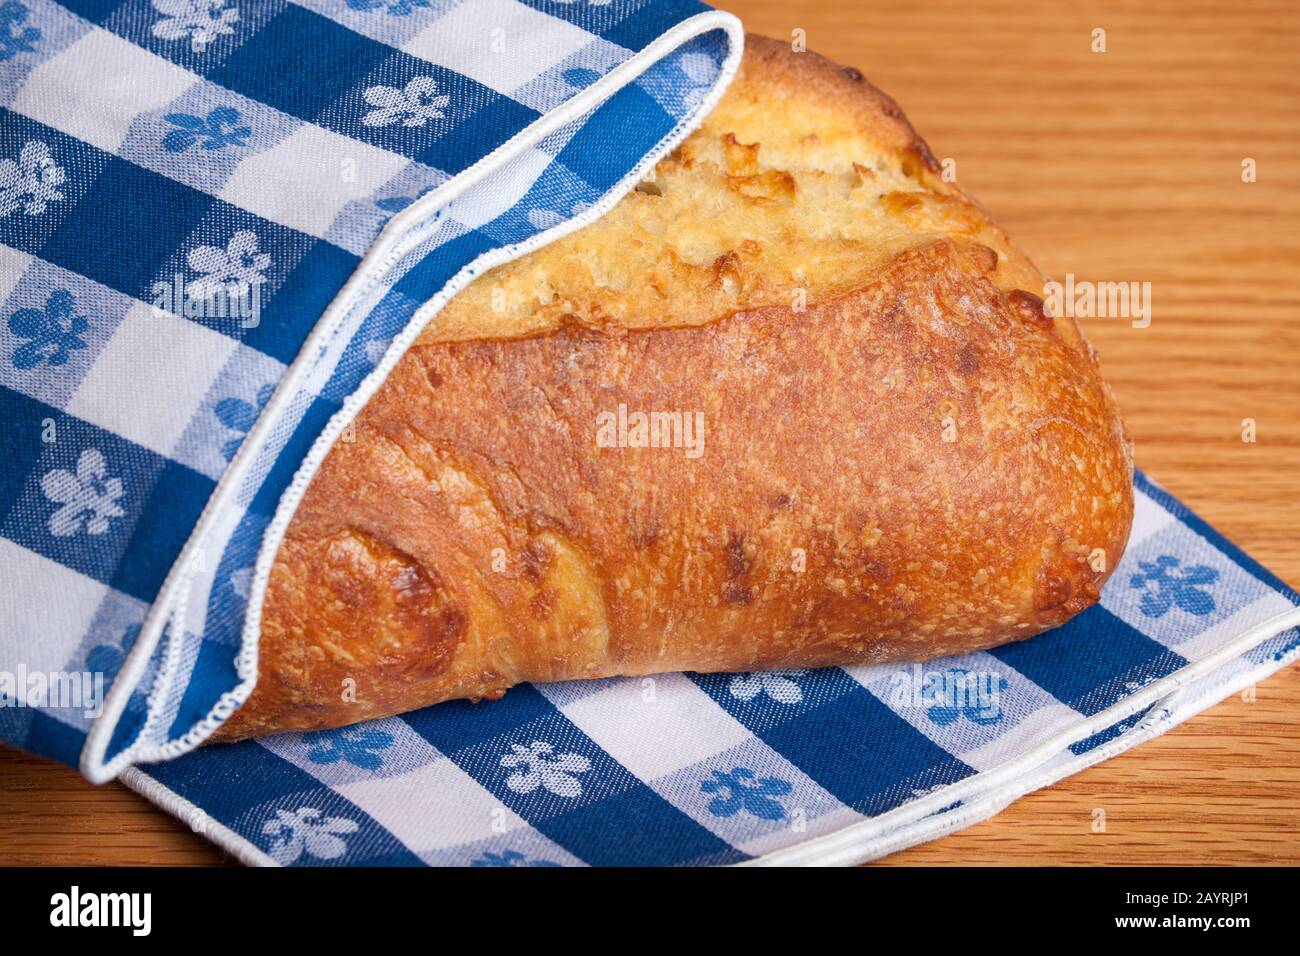 Pain de trois pains au fromage, partiellement emballé par une serviette en tissu bleu à damier Banque D'Images